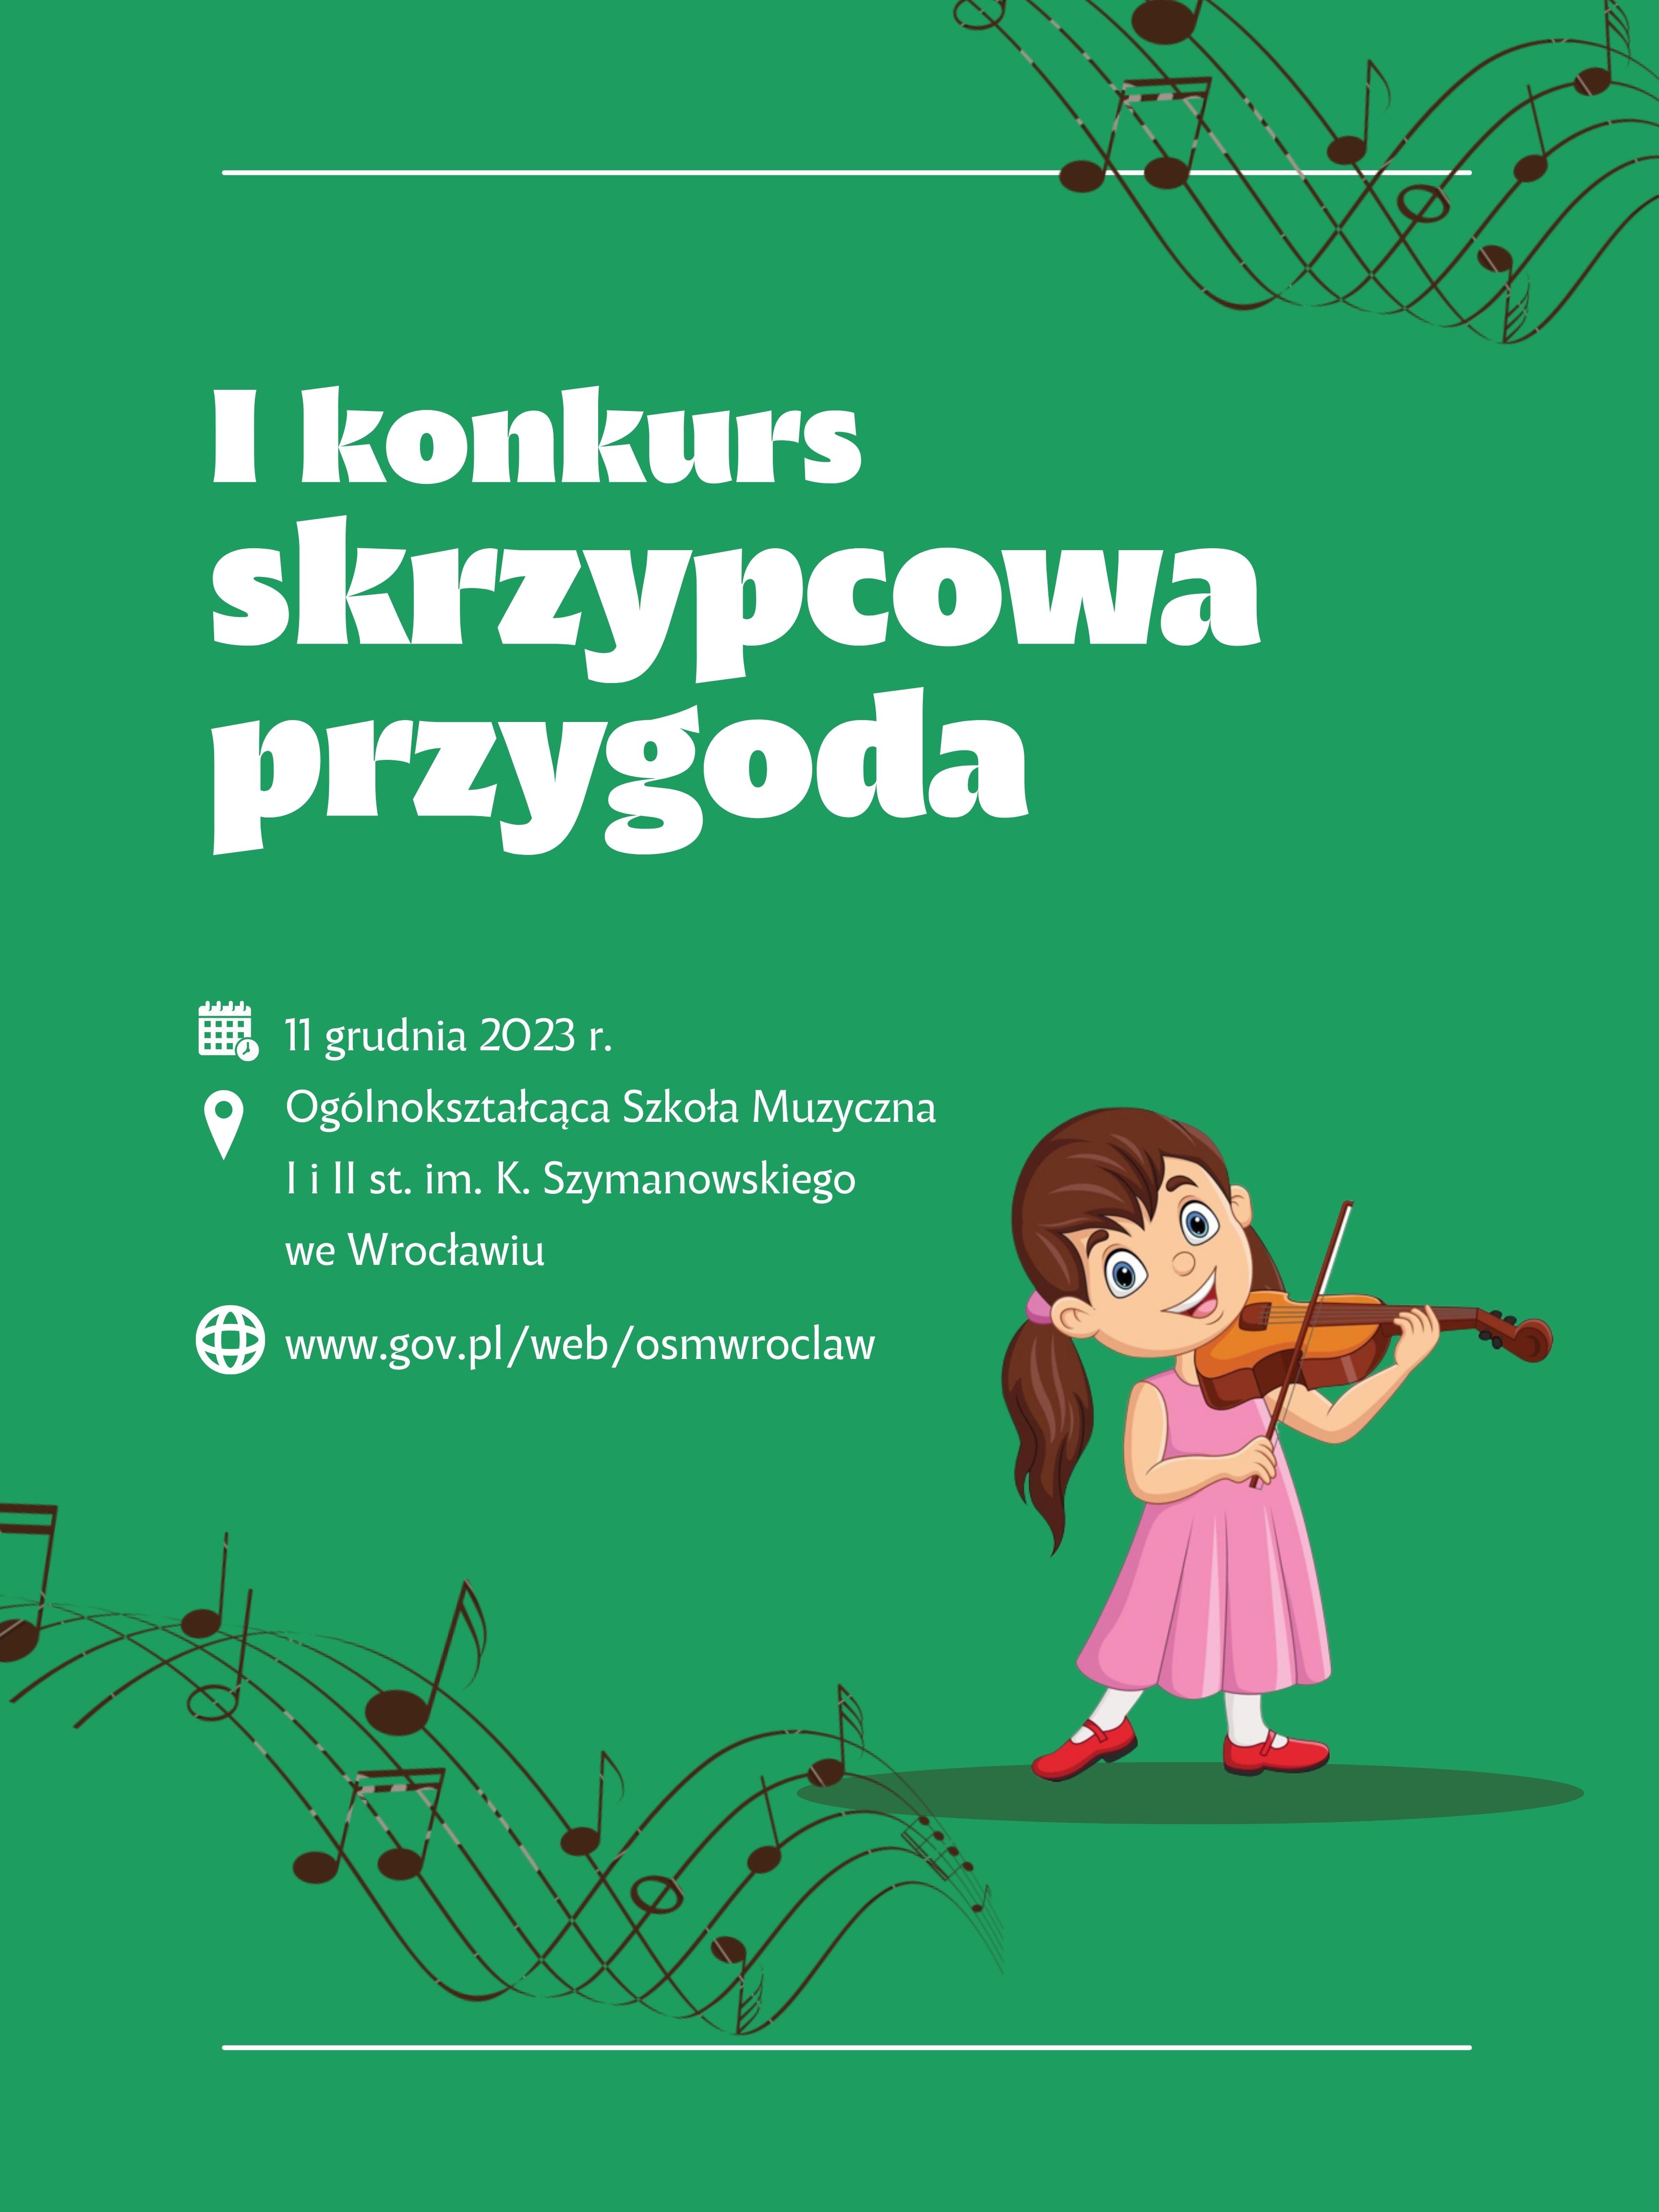 plakat w zielonej tonacji, zawierający grafikę dziewczynki grającej na skrzypcach oraz nazwę konkursu